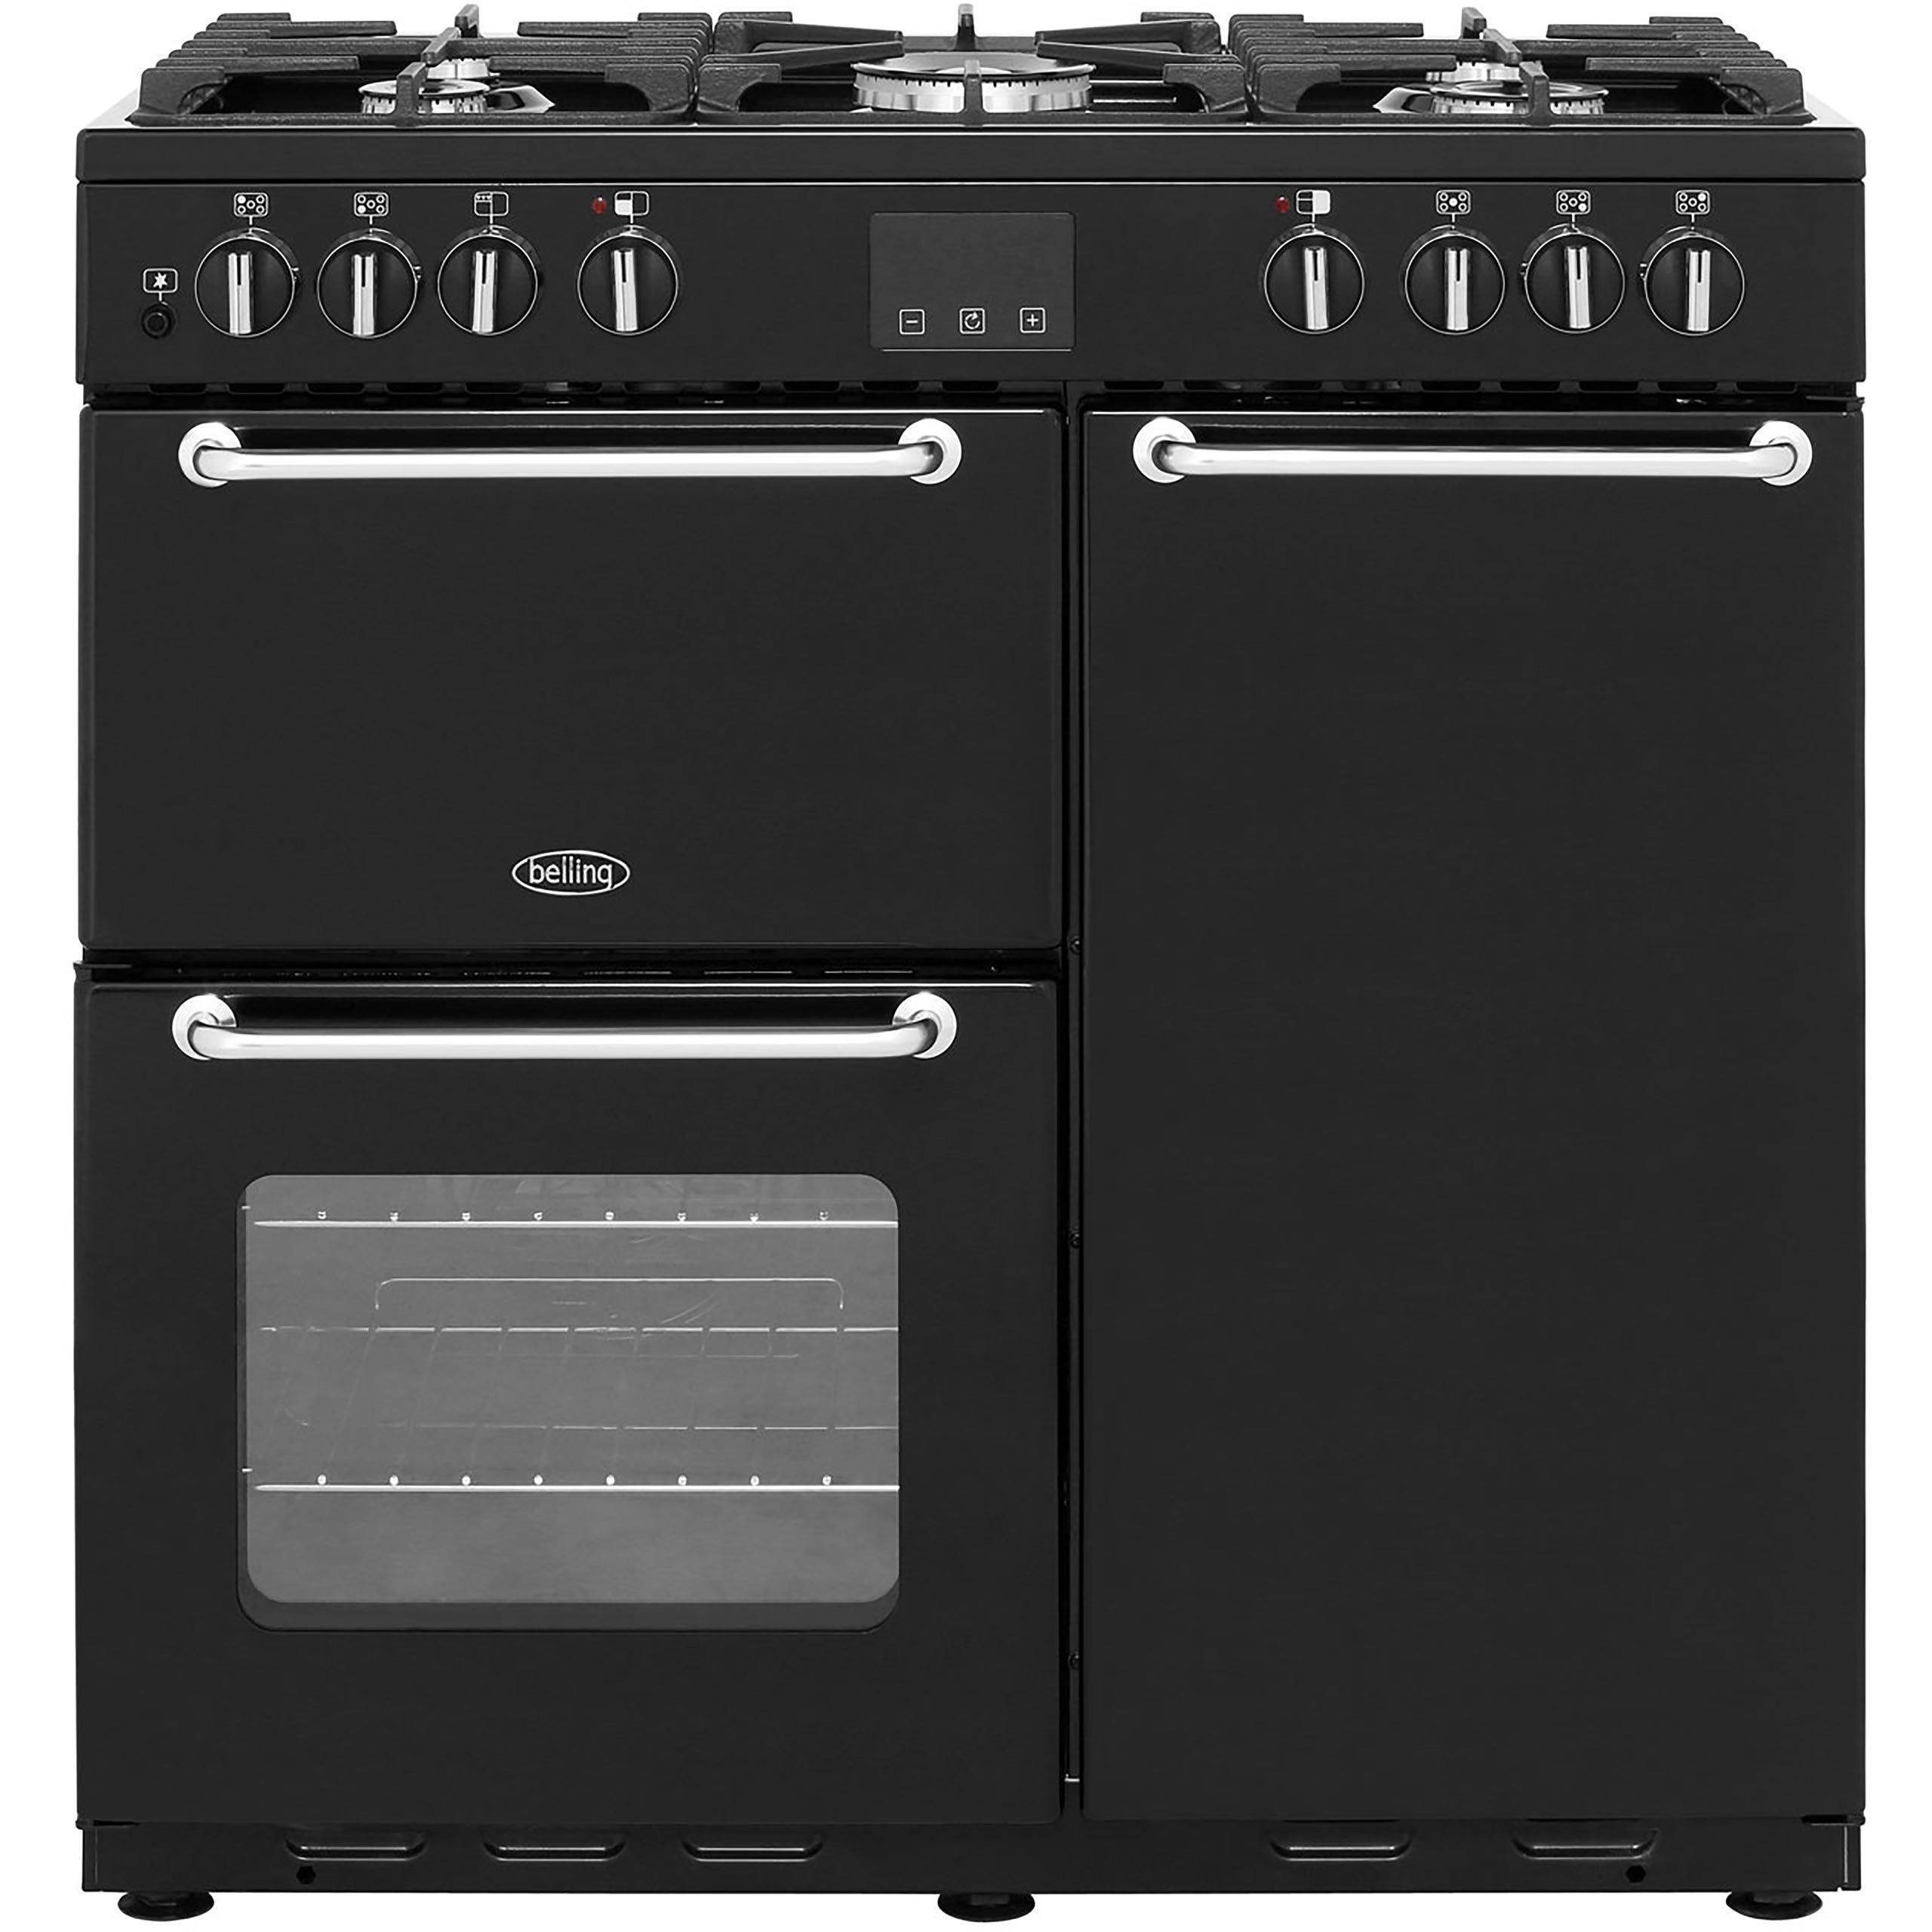 Belling SANDRINGHAM90DFT 90cm Dual Fuel Range Cooker - Black - A/A Rated, Black